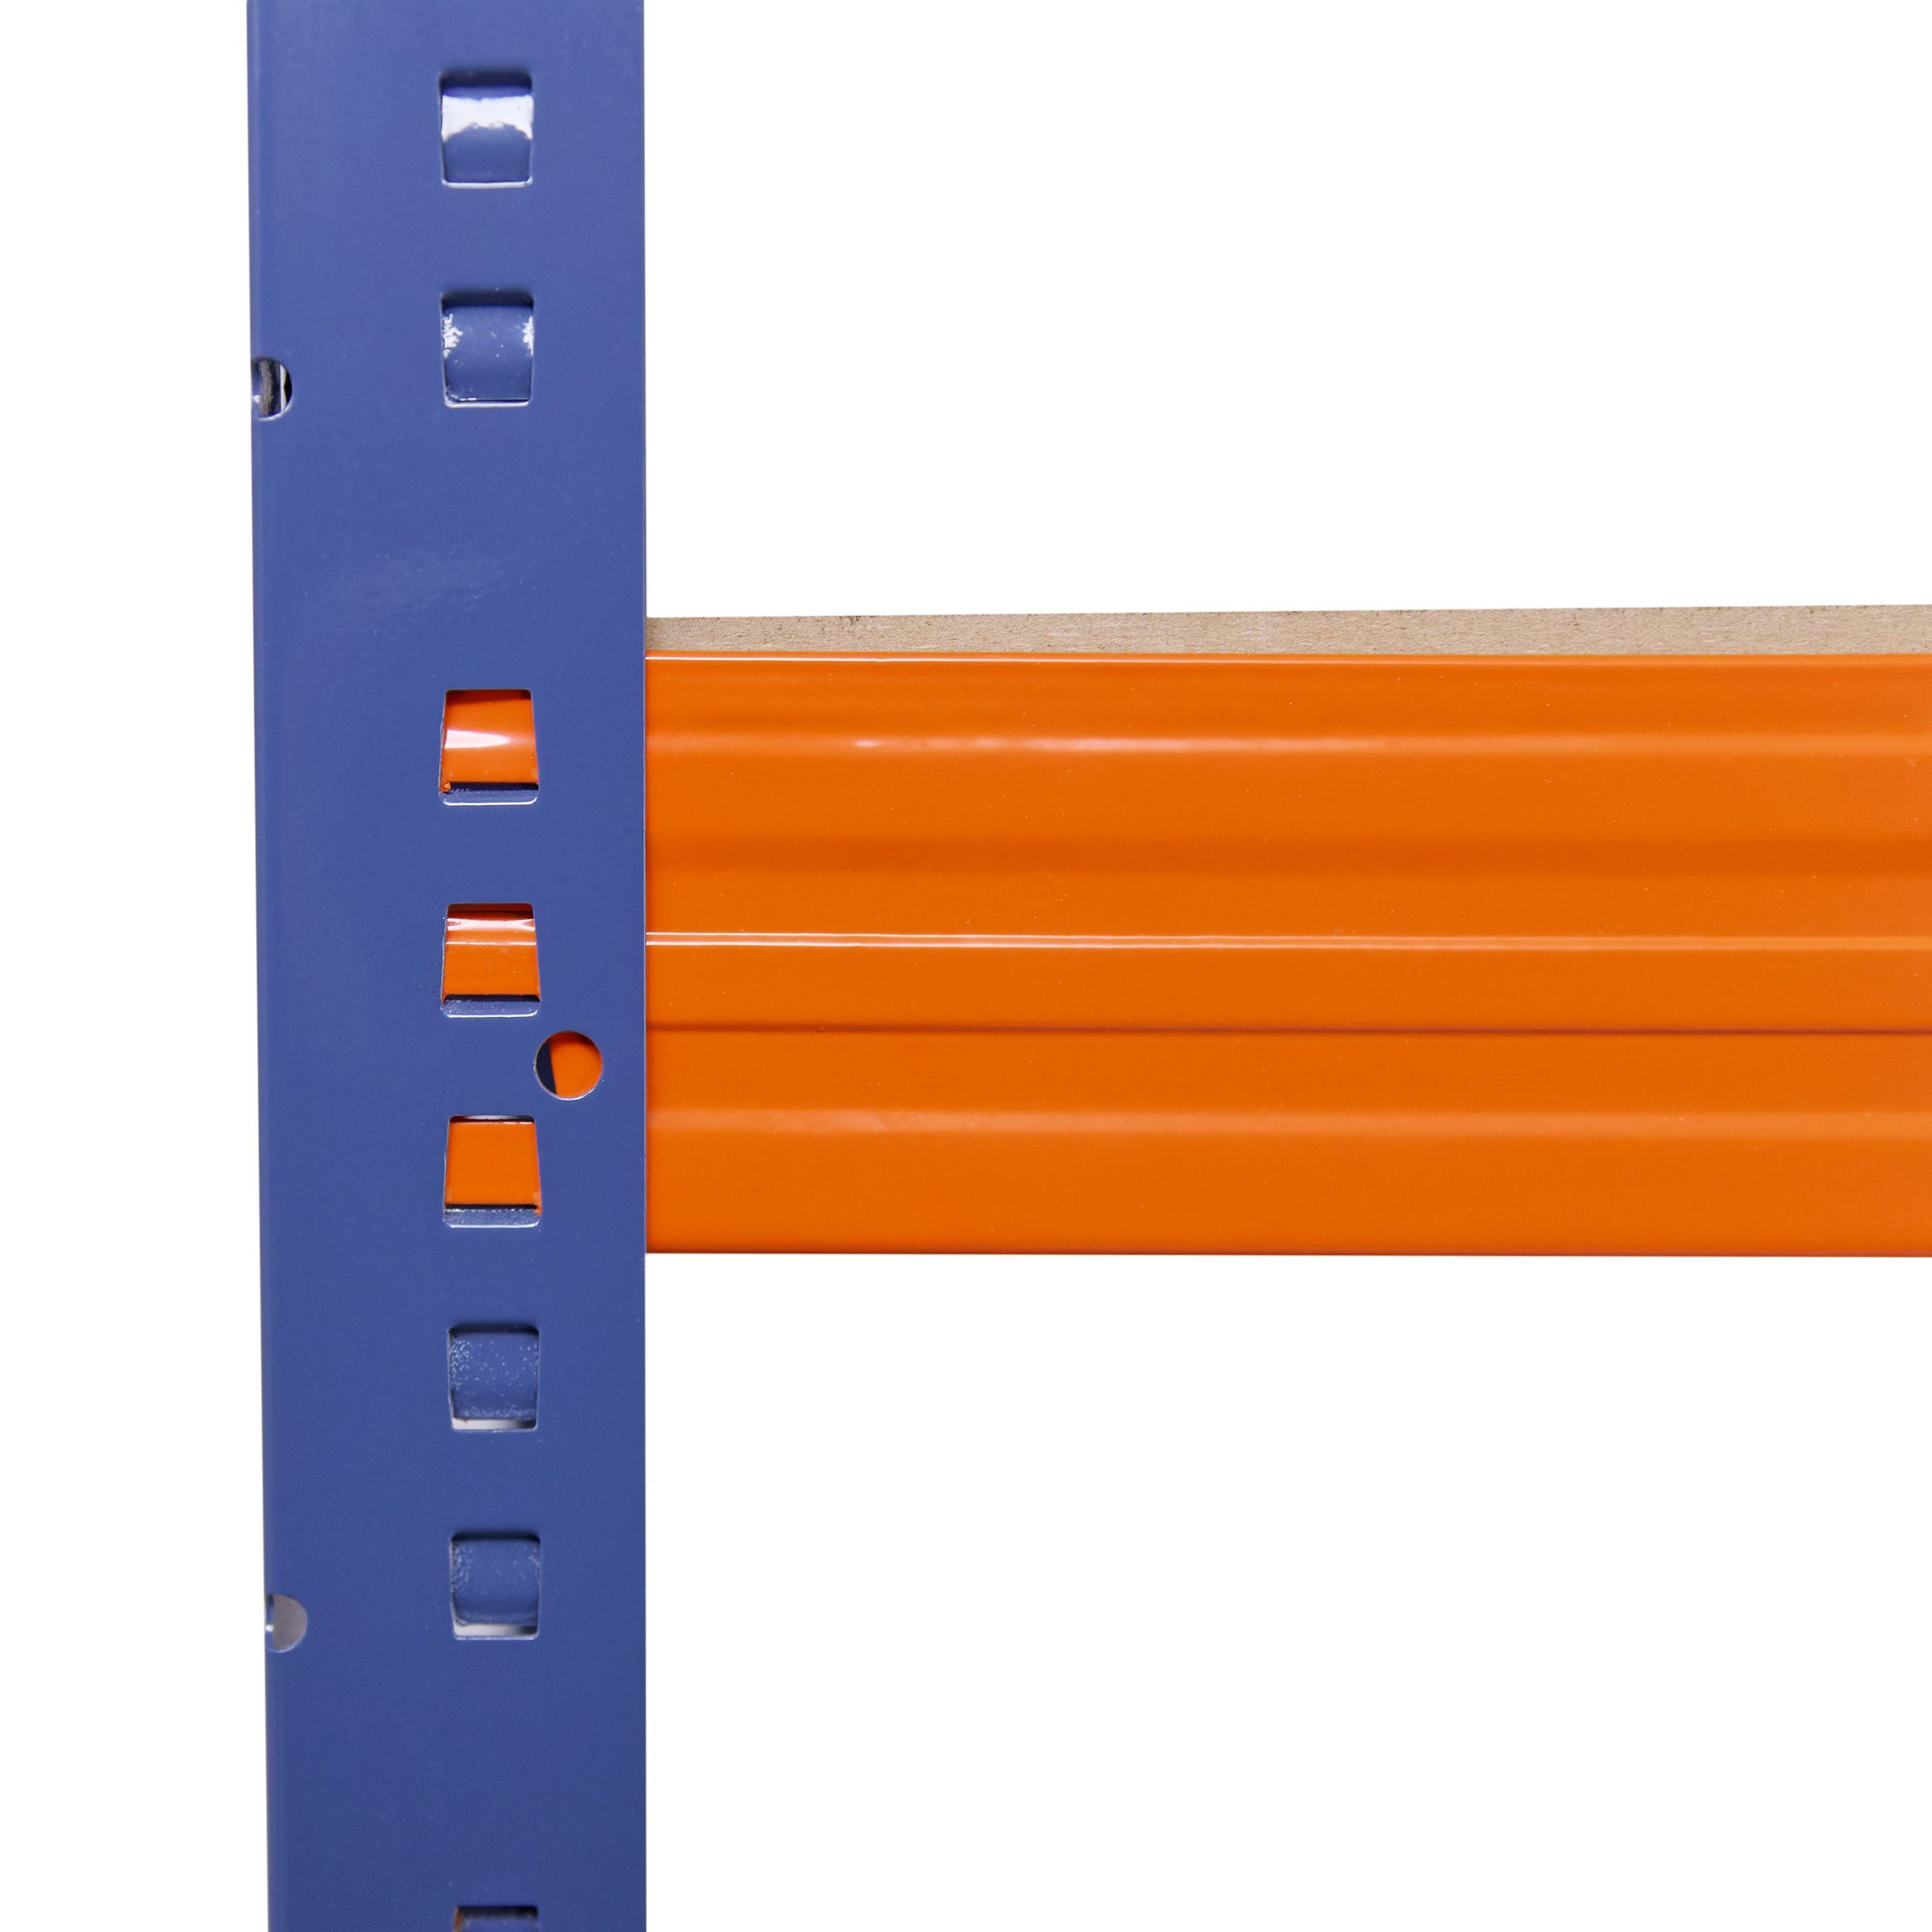 Schwerlastregal Kellerregal, 230x120x50cm & blau-orange, Metall Regal als Lagerregal, Steckregal 200kg PROFI, Werkstattregal shelfplaza mit Garagenregal, je Metallregal Böden 5 Tragkraft, Regale